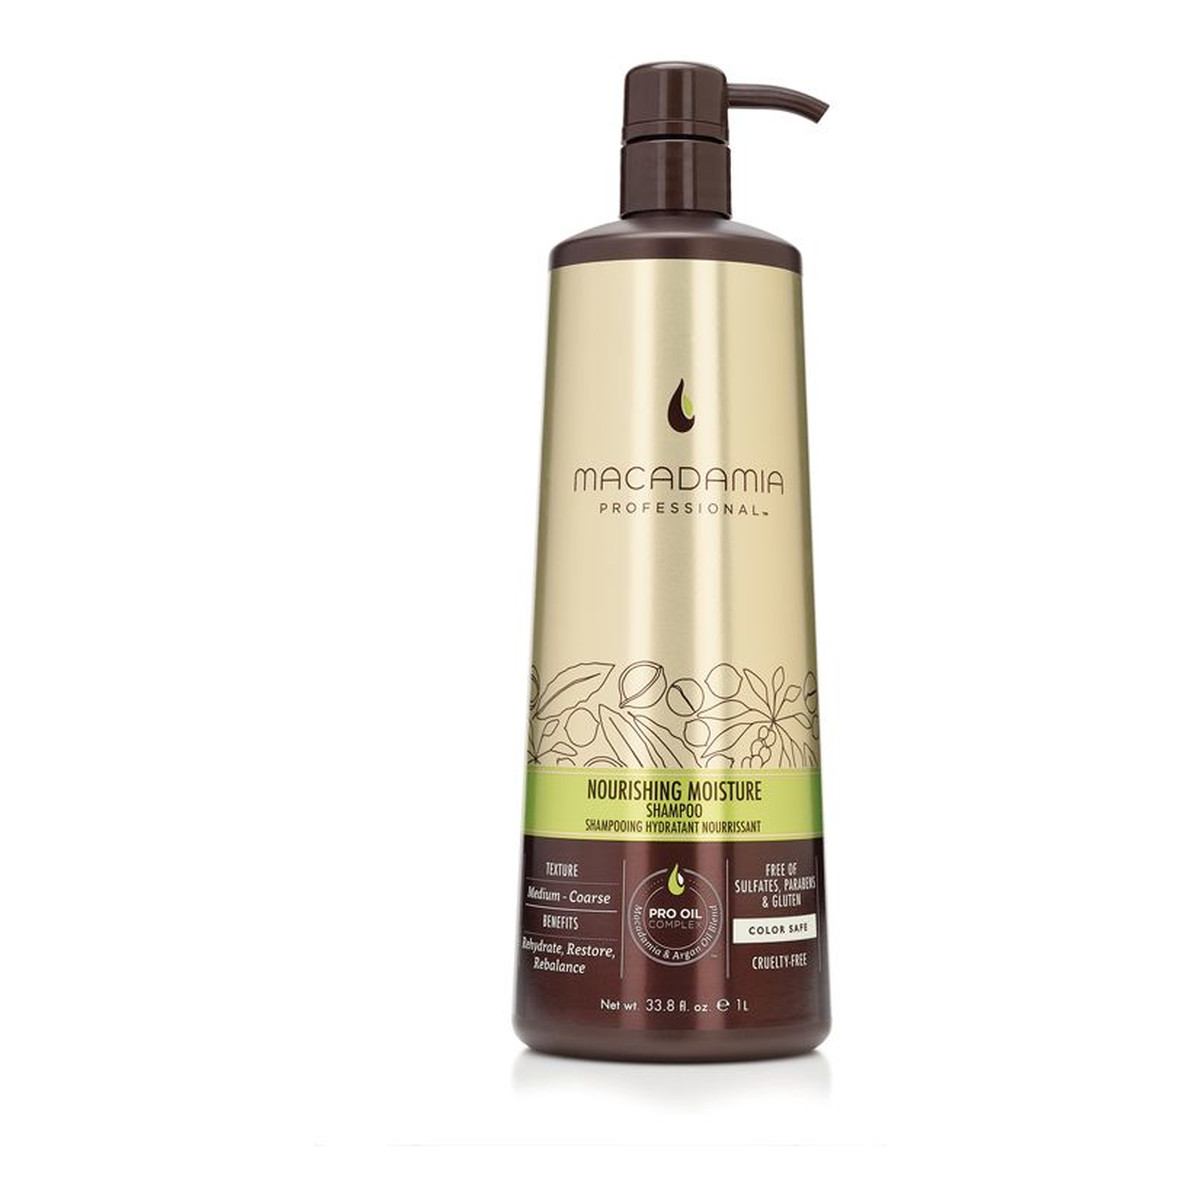 Macadamia Professional Professional Nourishing Moisture szampon do włosów suchych 1000ml